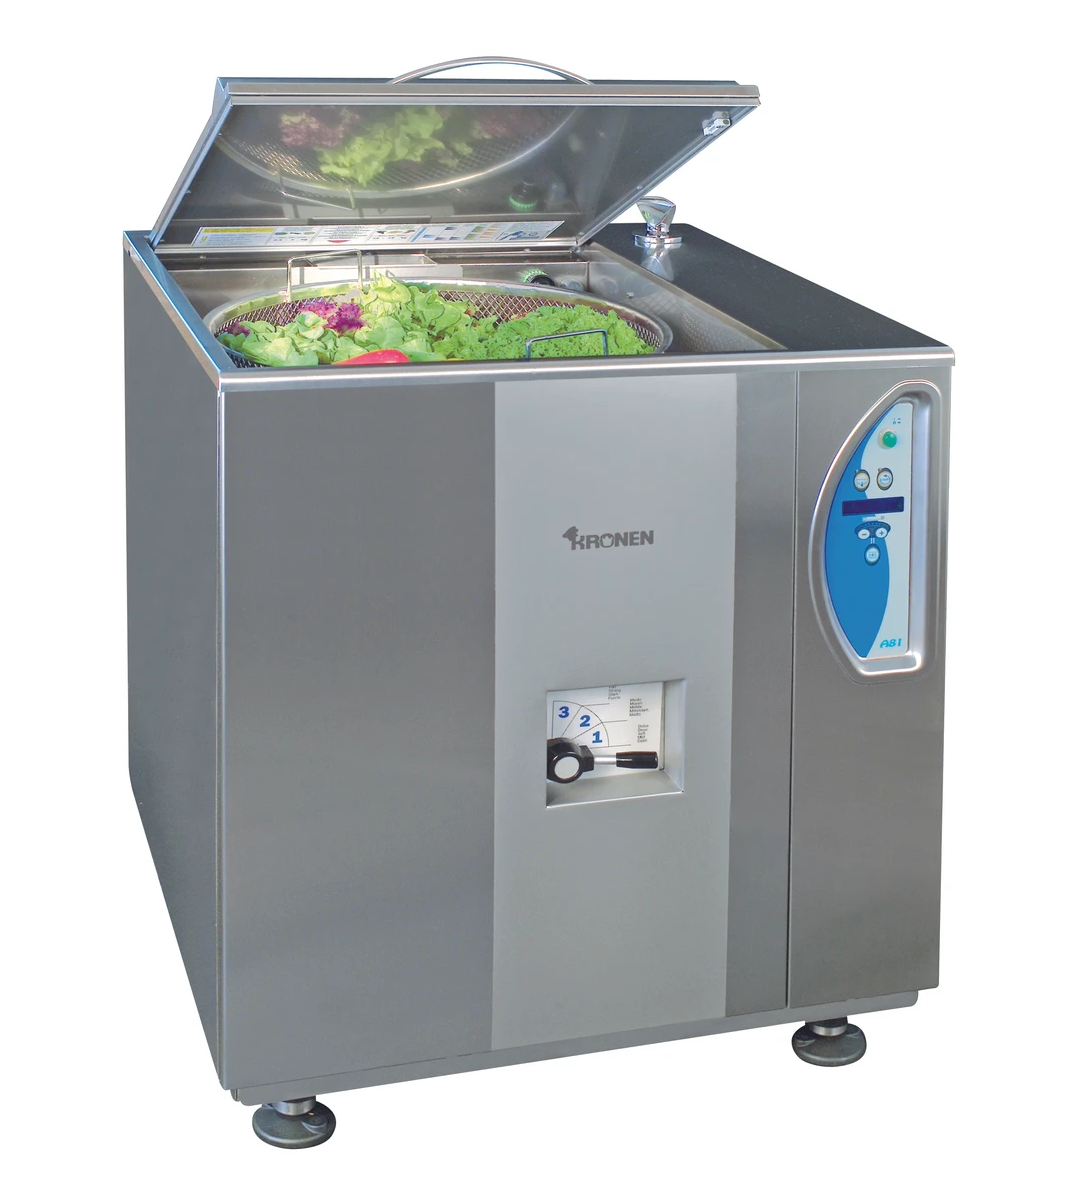 Kronen Salad Washing Machine KW-81A